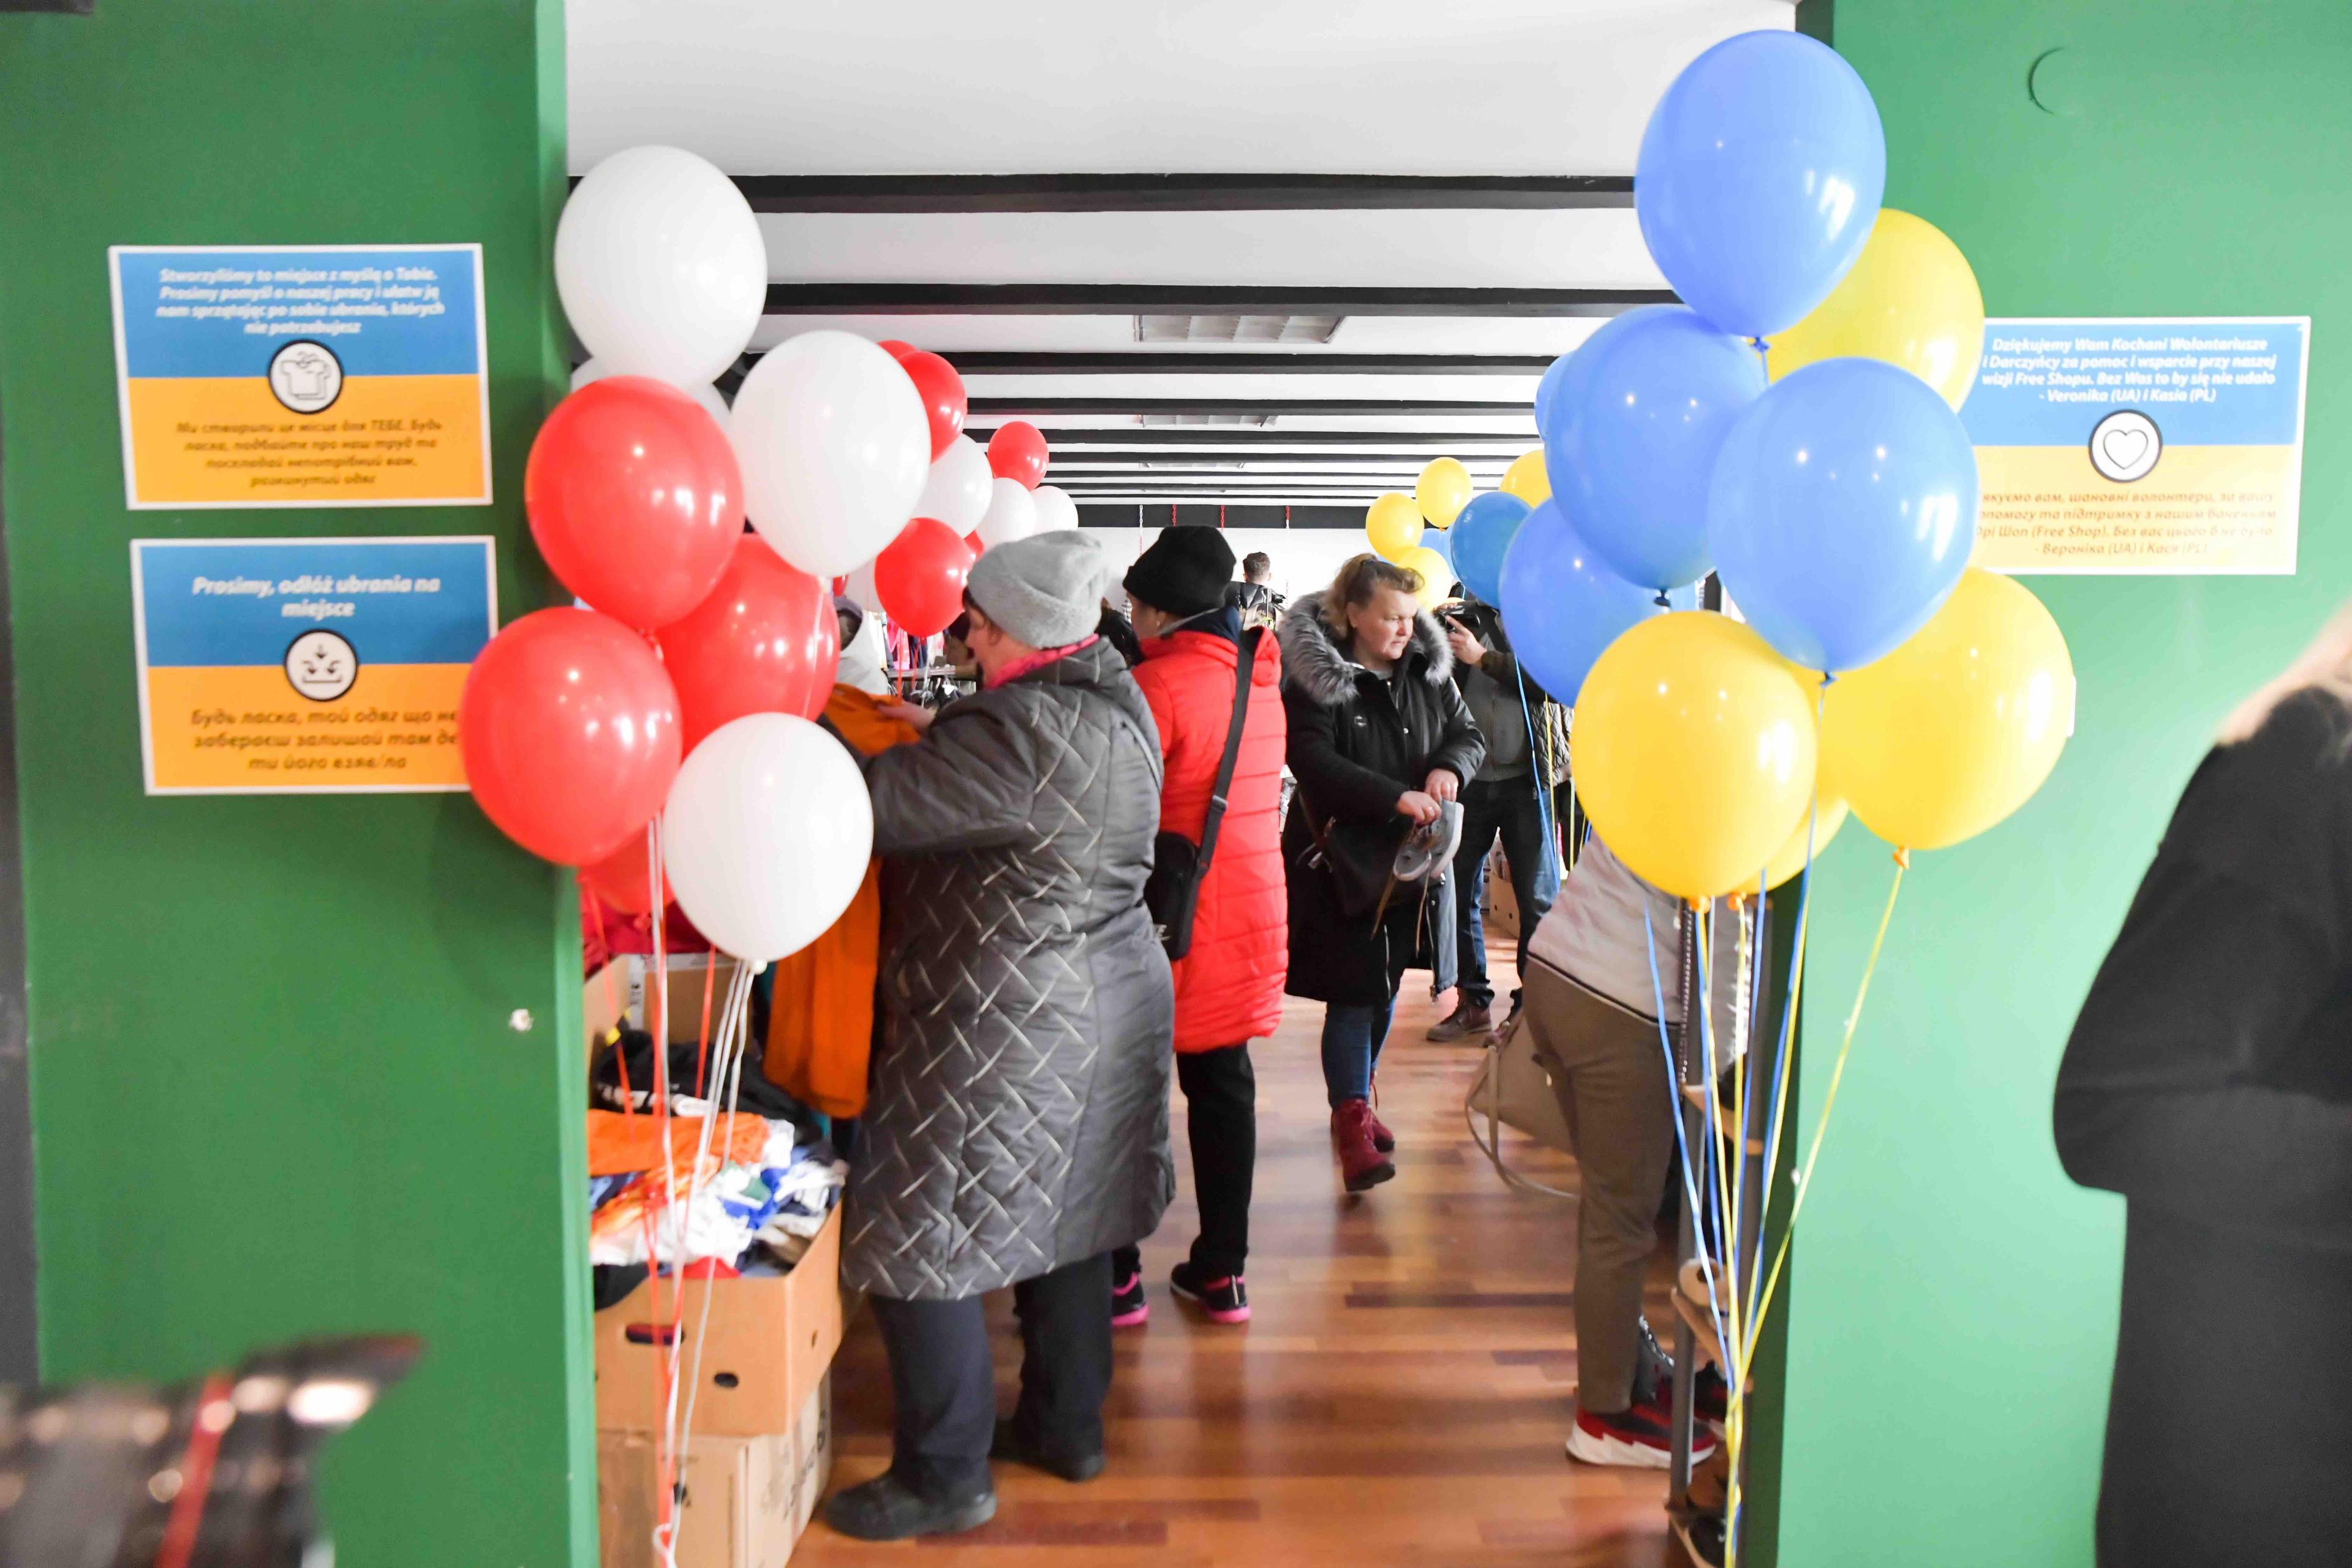 Wejcie do sklepu z bezpłatną pomocą dla uchodźców z Ukrainy, po obu stronach weśjcia baloniki w kolorach flagi polskiej i ukraińskiej, w głębi osoby przeglądają rzeczy..